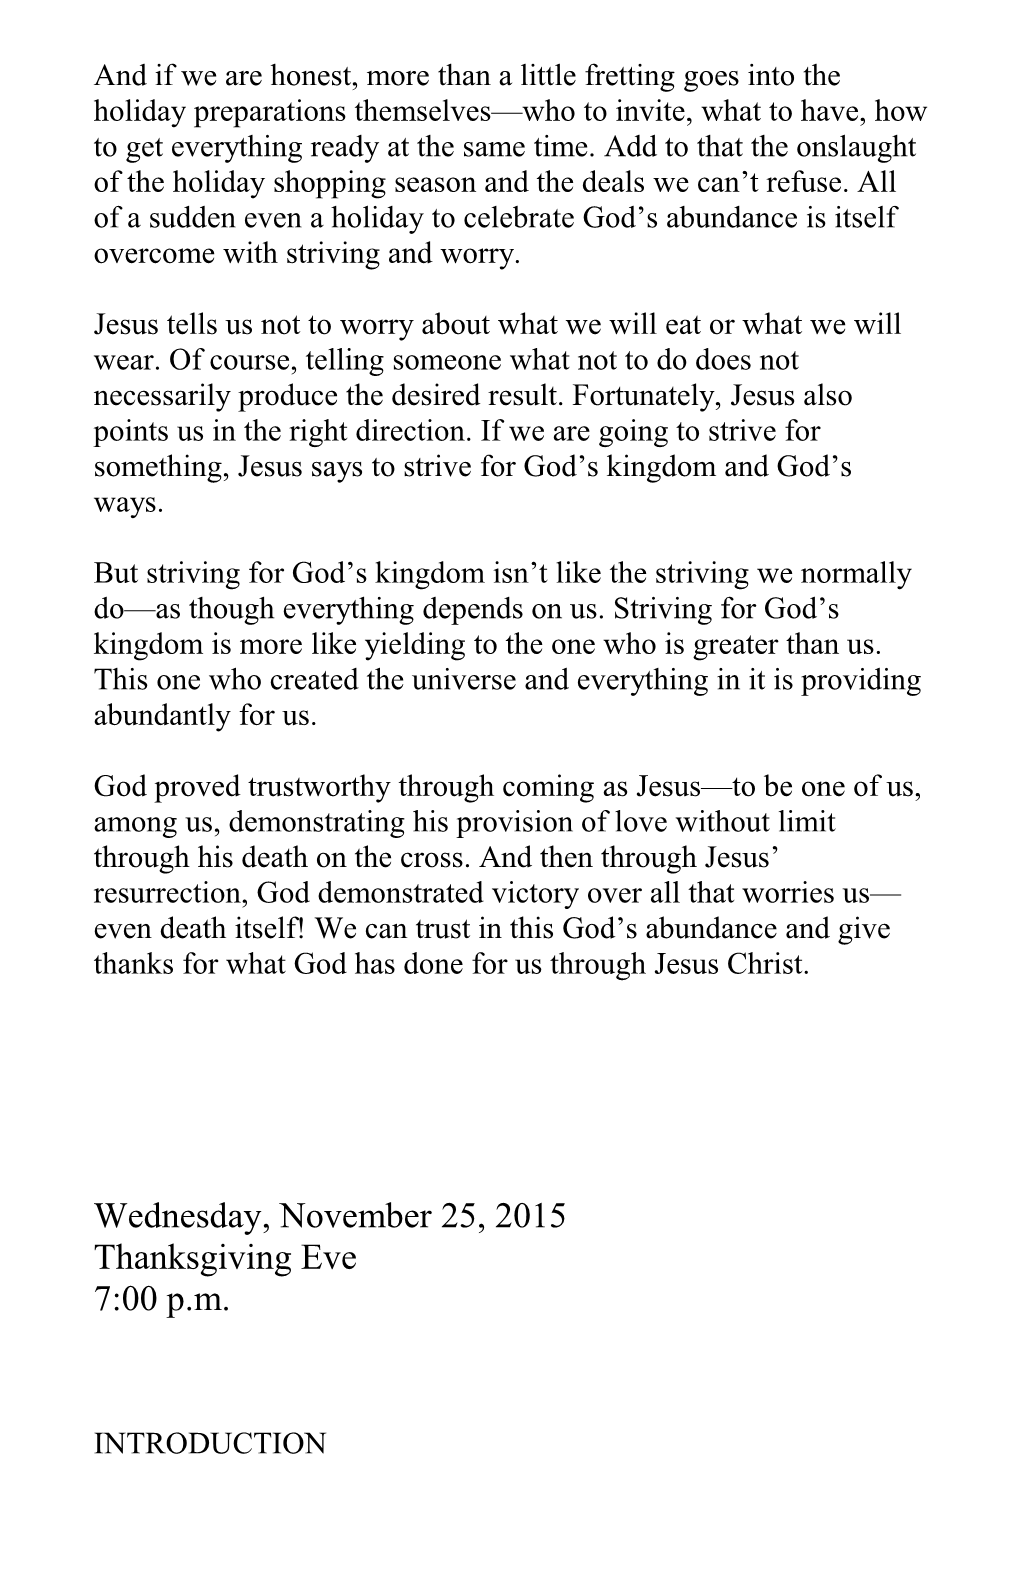 Worship Plan for Thursday, November 26, 2015